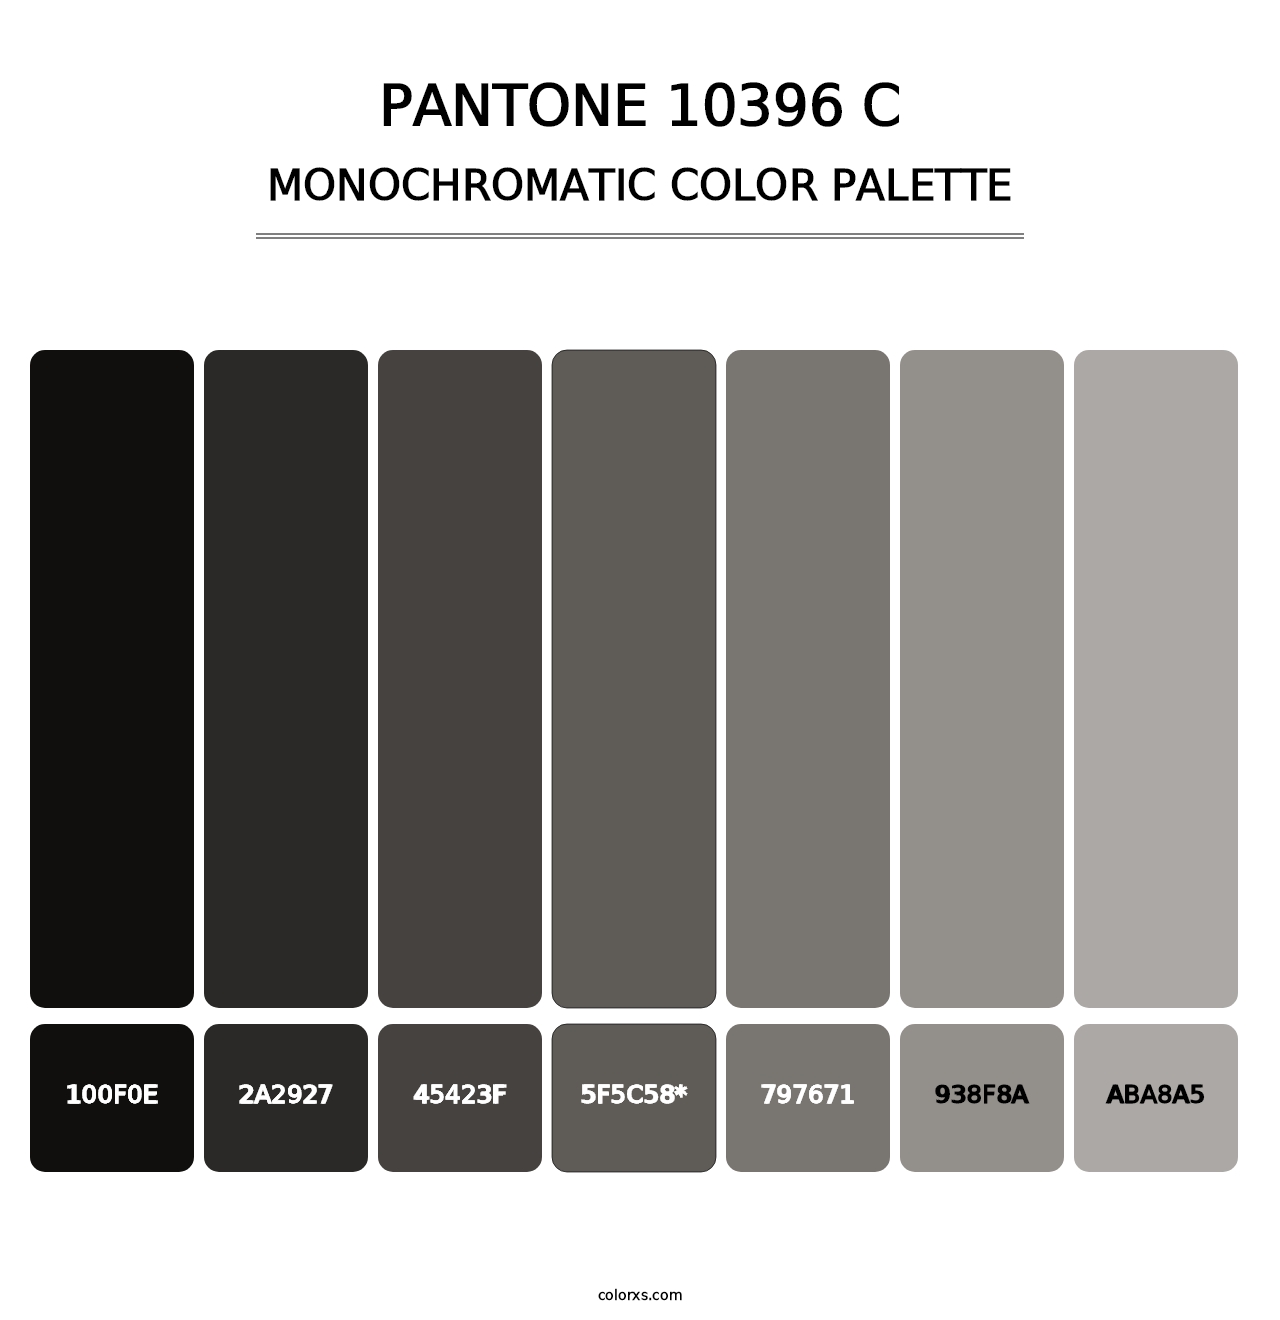 PANTONE 10396 C - Monochromatic Color Palette